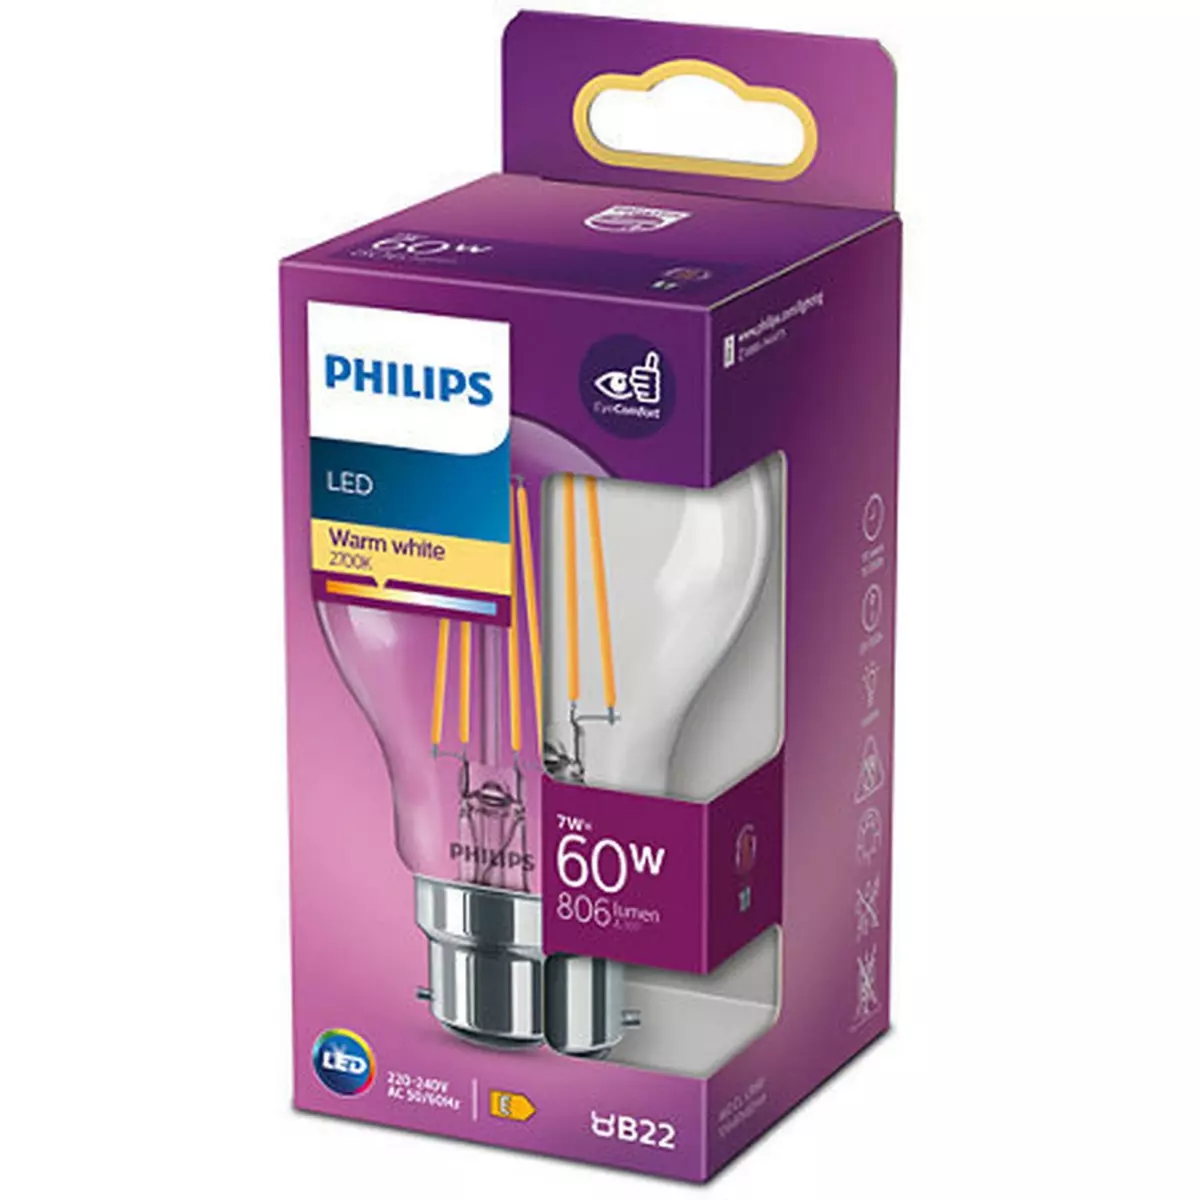 PHILIPS Ampoule LED 60W STD B22 CHAUD CLAIRE